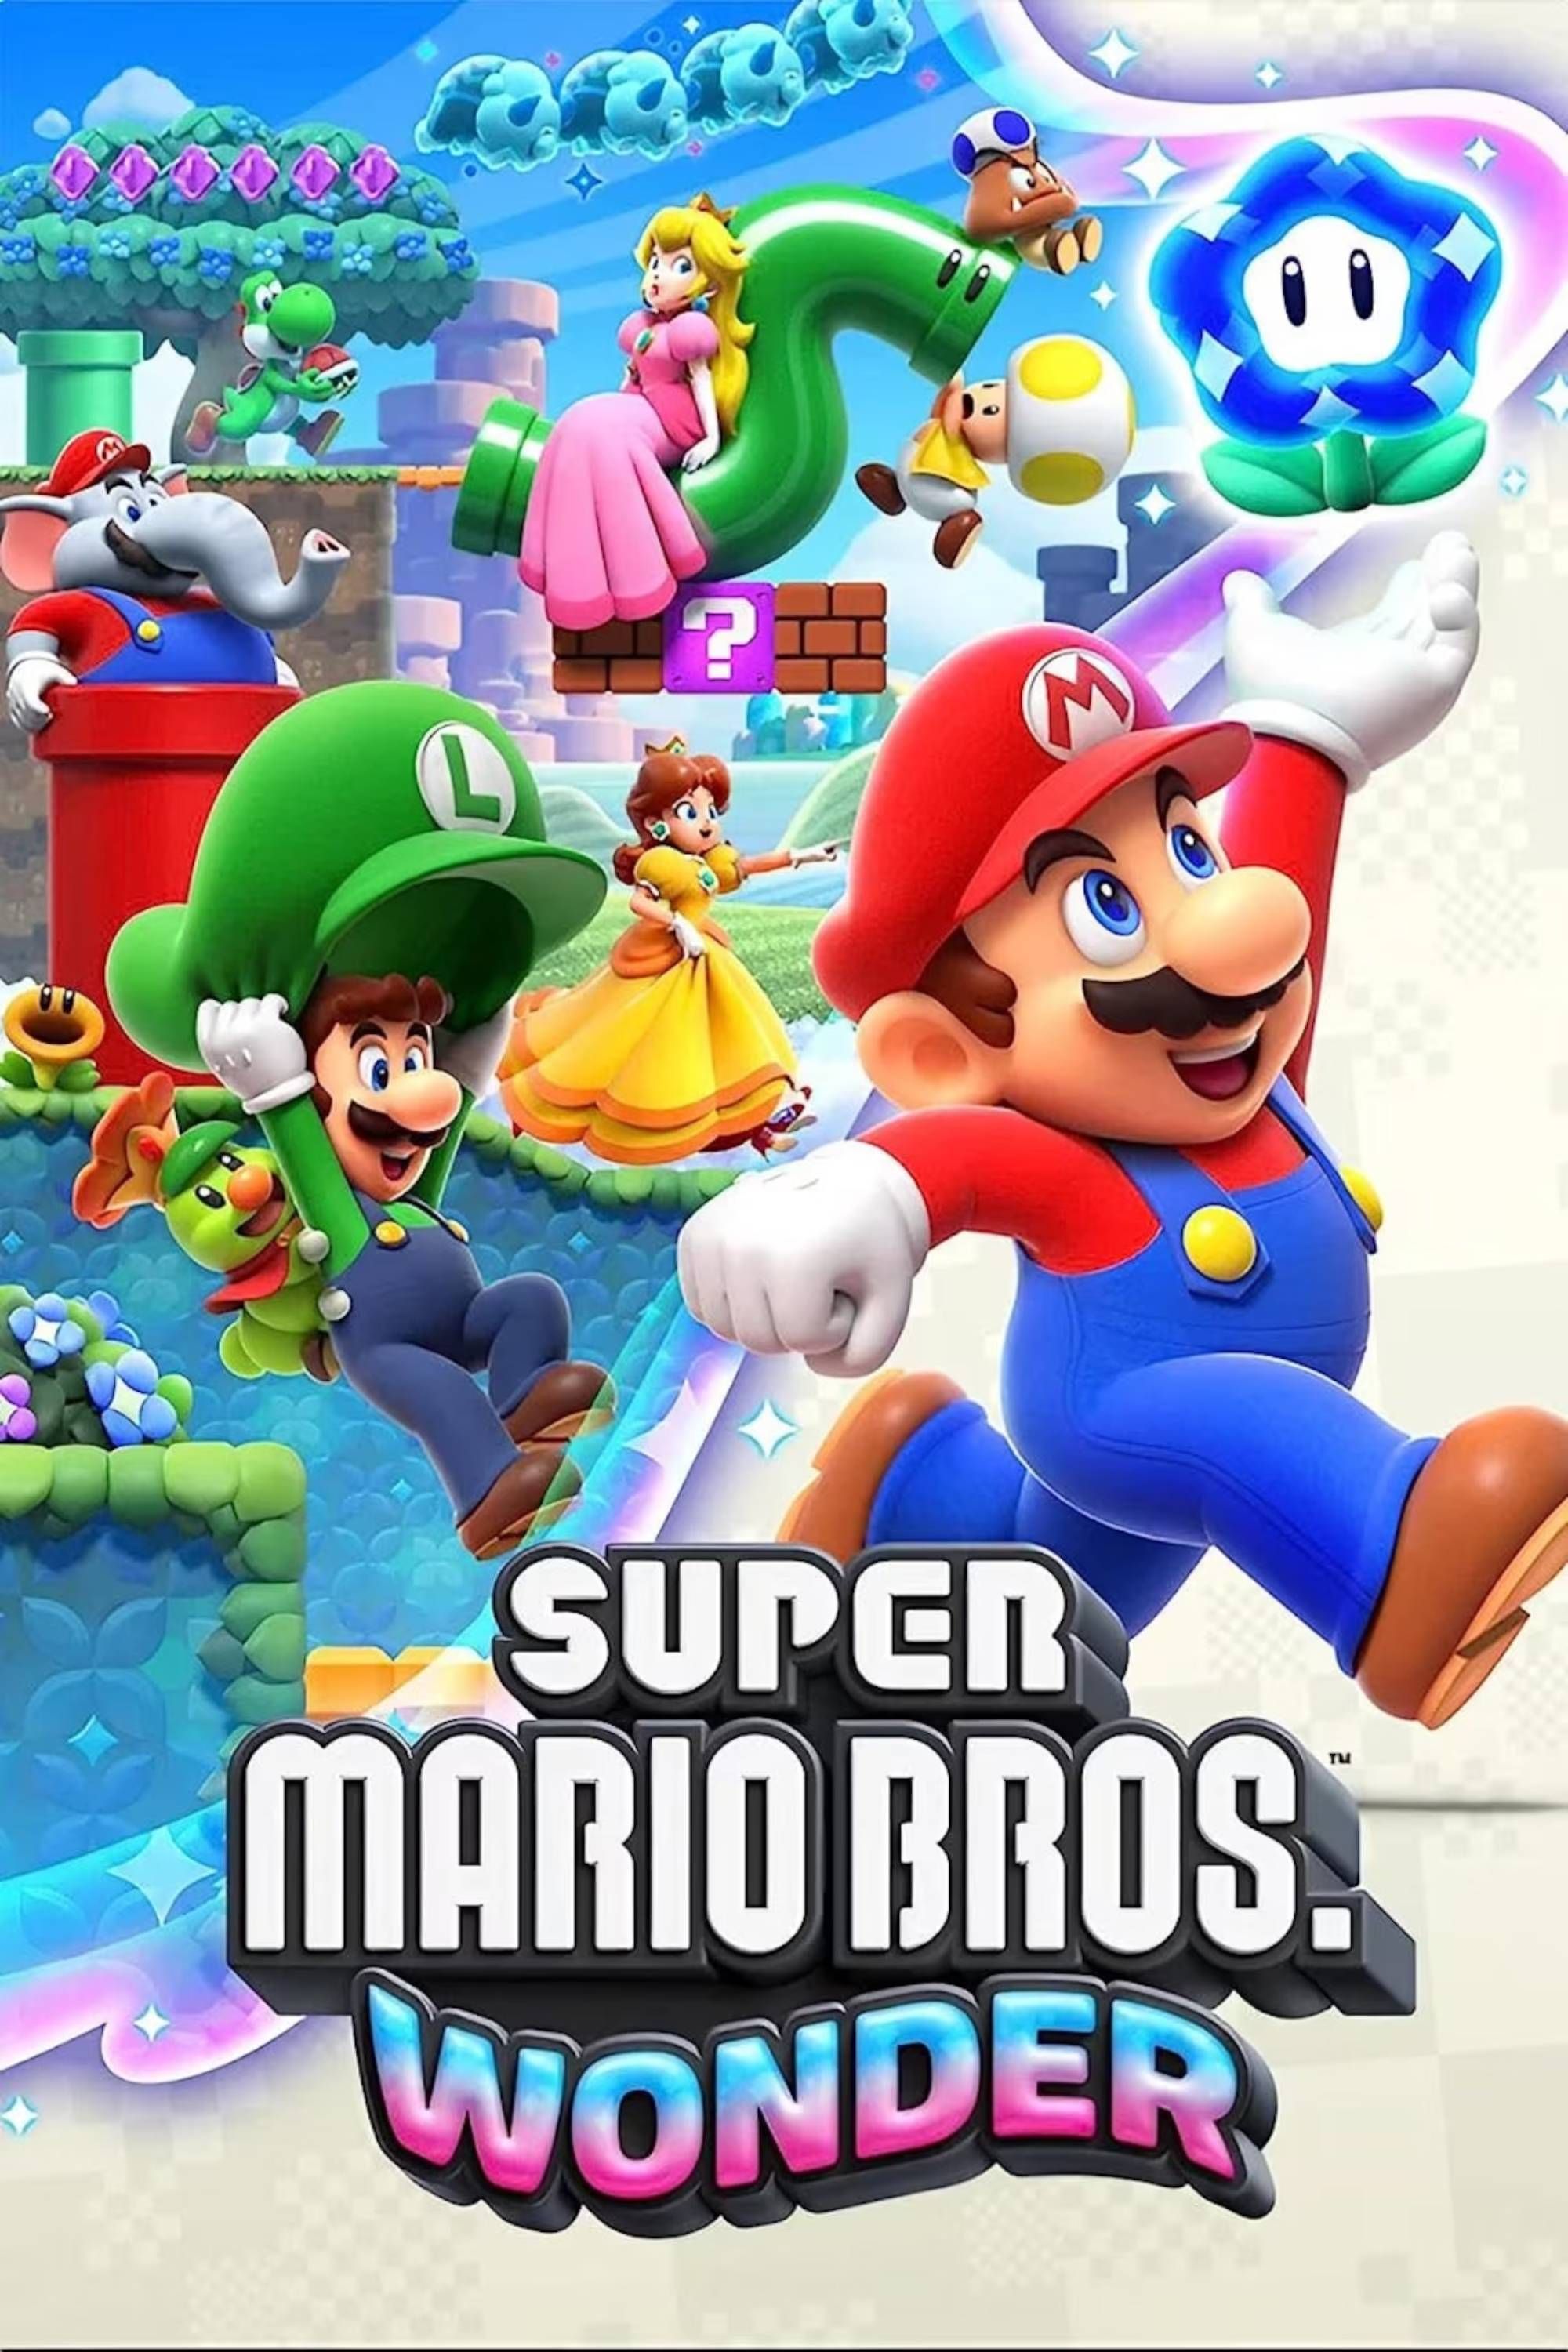 Super Mario Bros Wonder To Have Online Play? - Gameranx